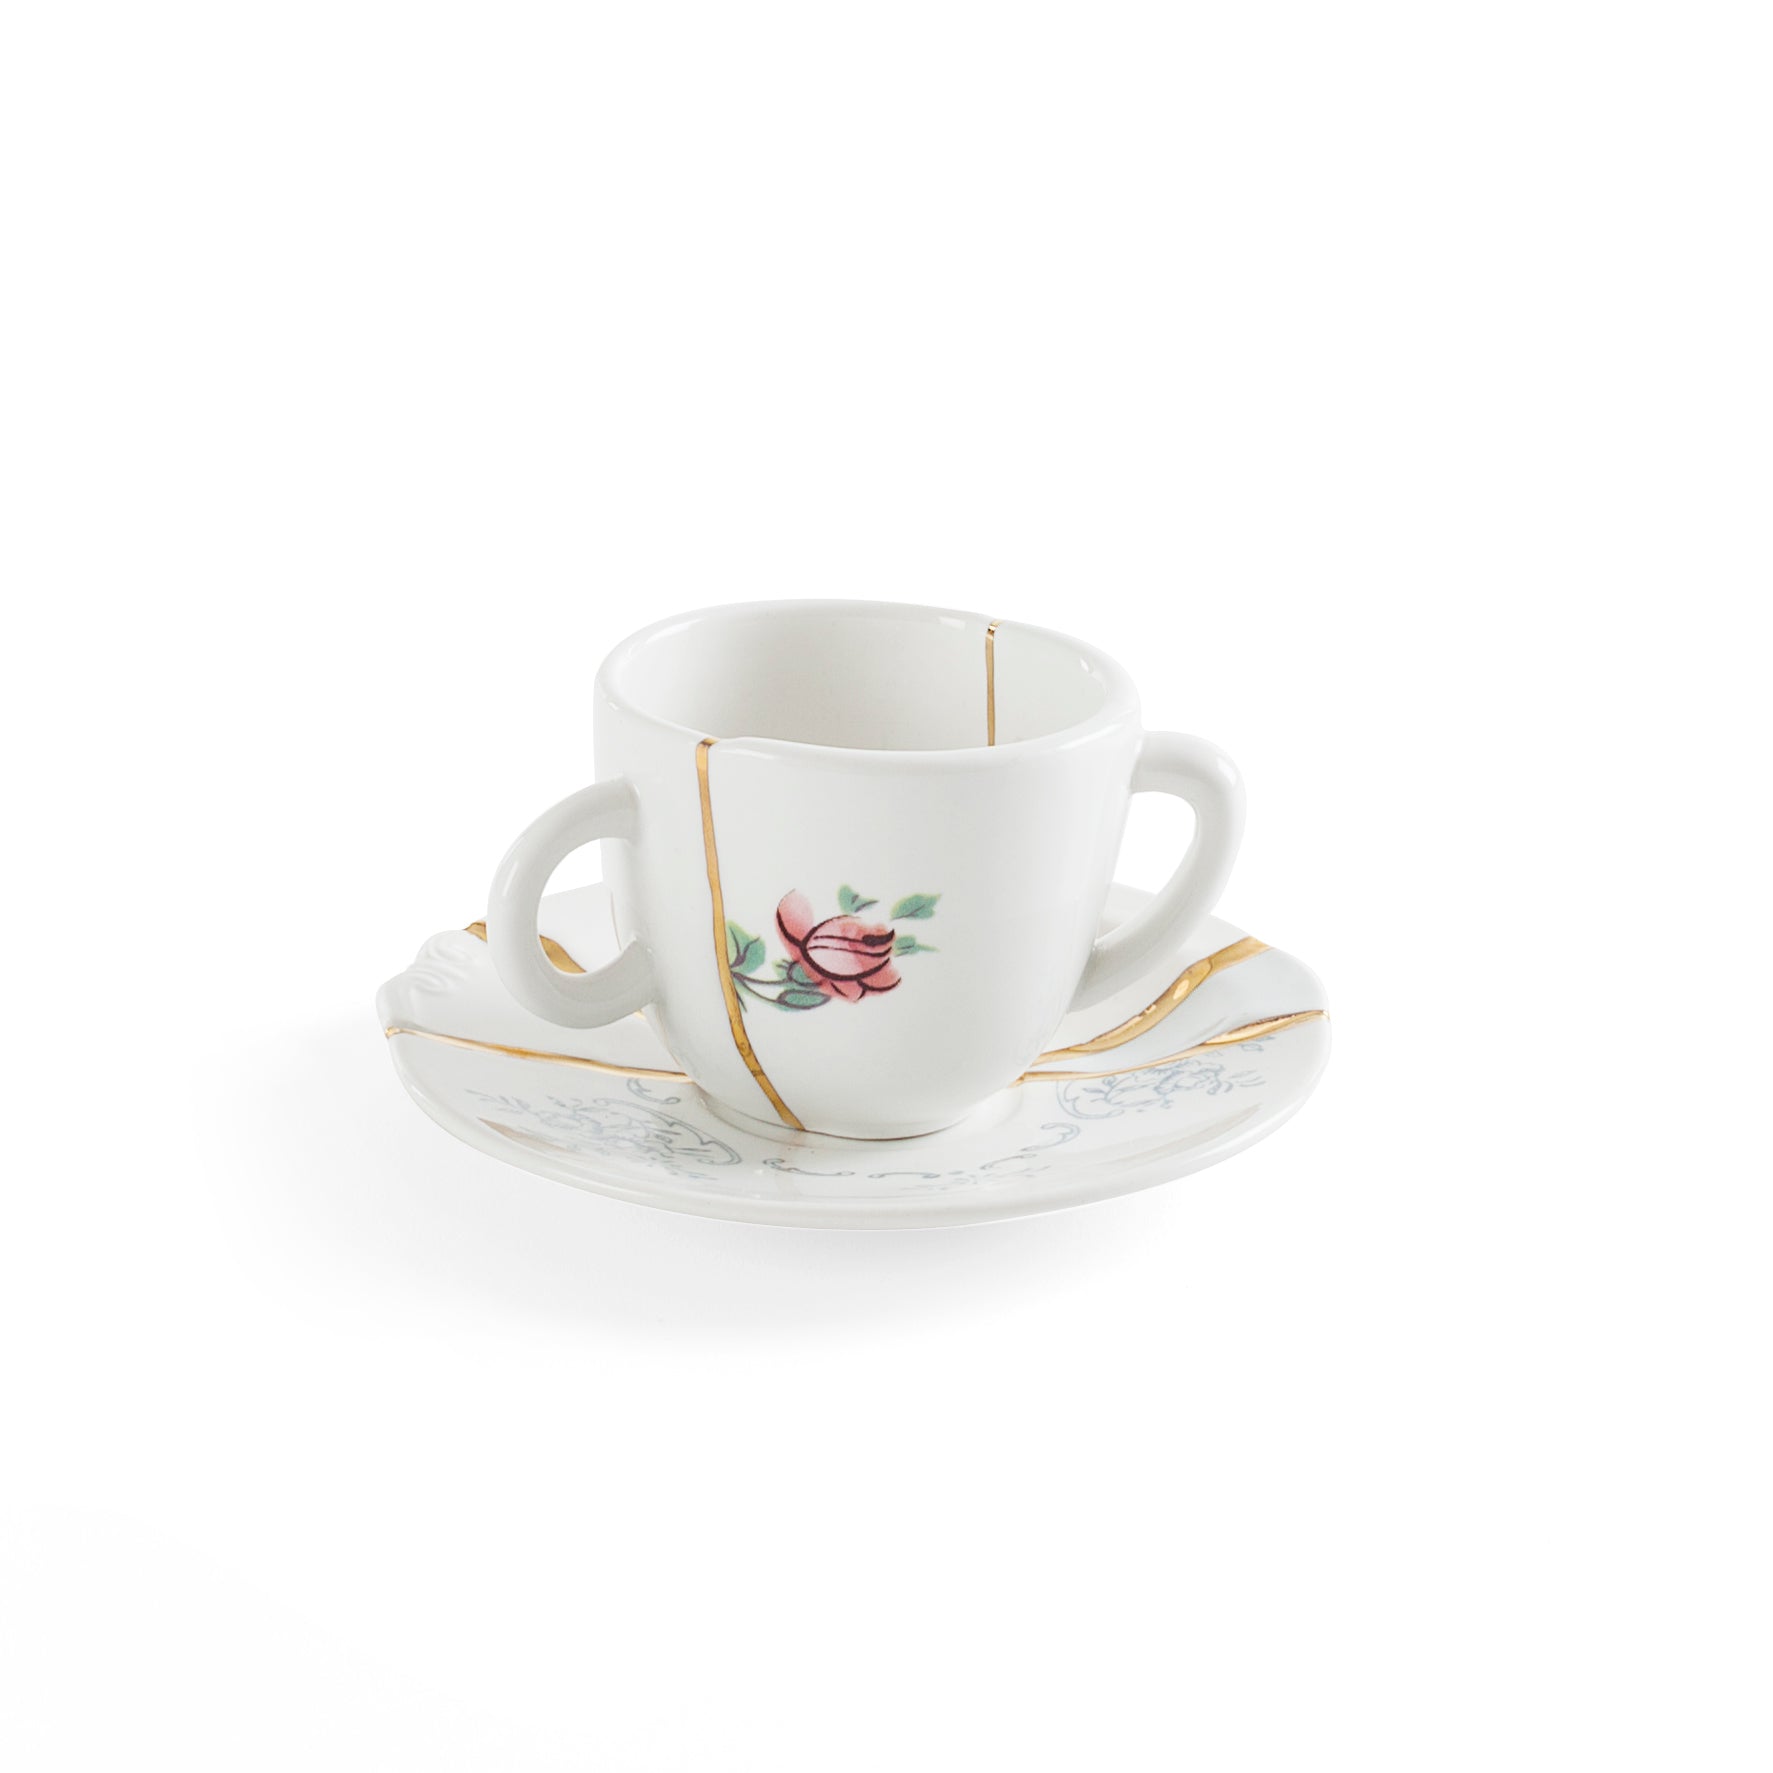 Seletti  Kintsugi Tazzina caffe' con piattino in porcellana, decoro n°1